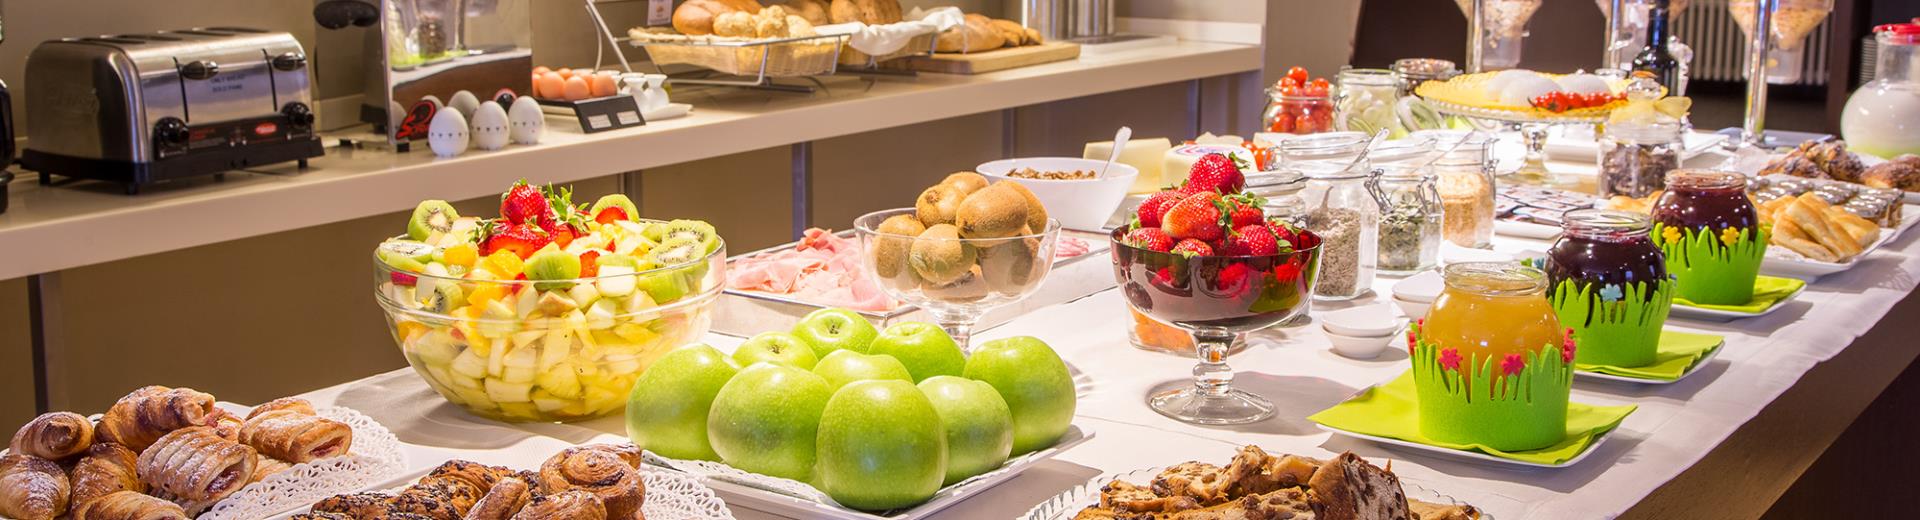 The rich breakfast buffet at the Hotel Metropoli in Genoa